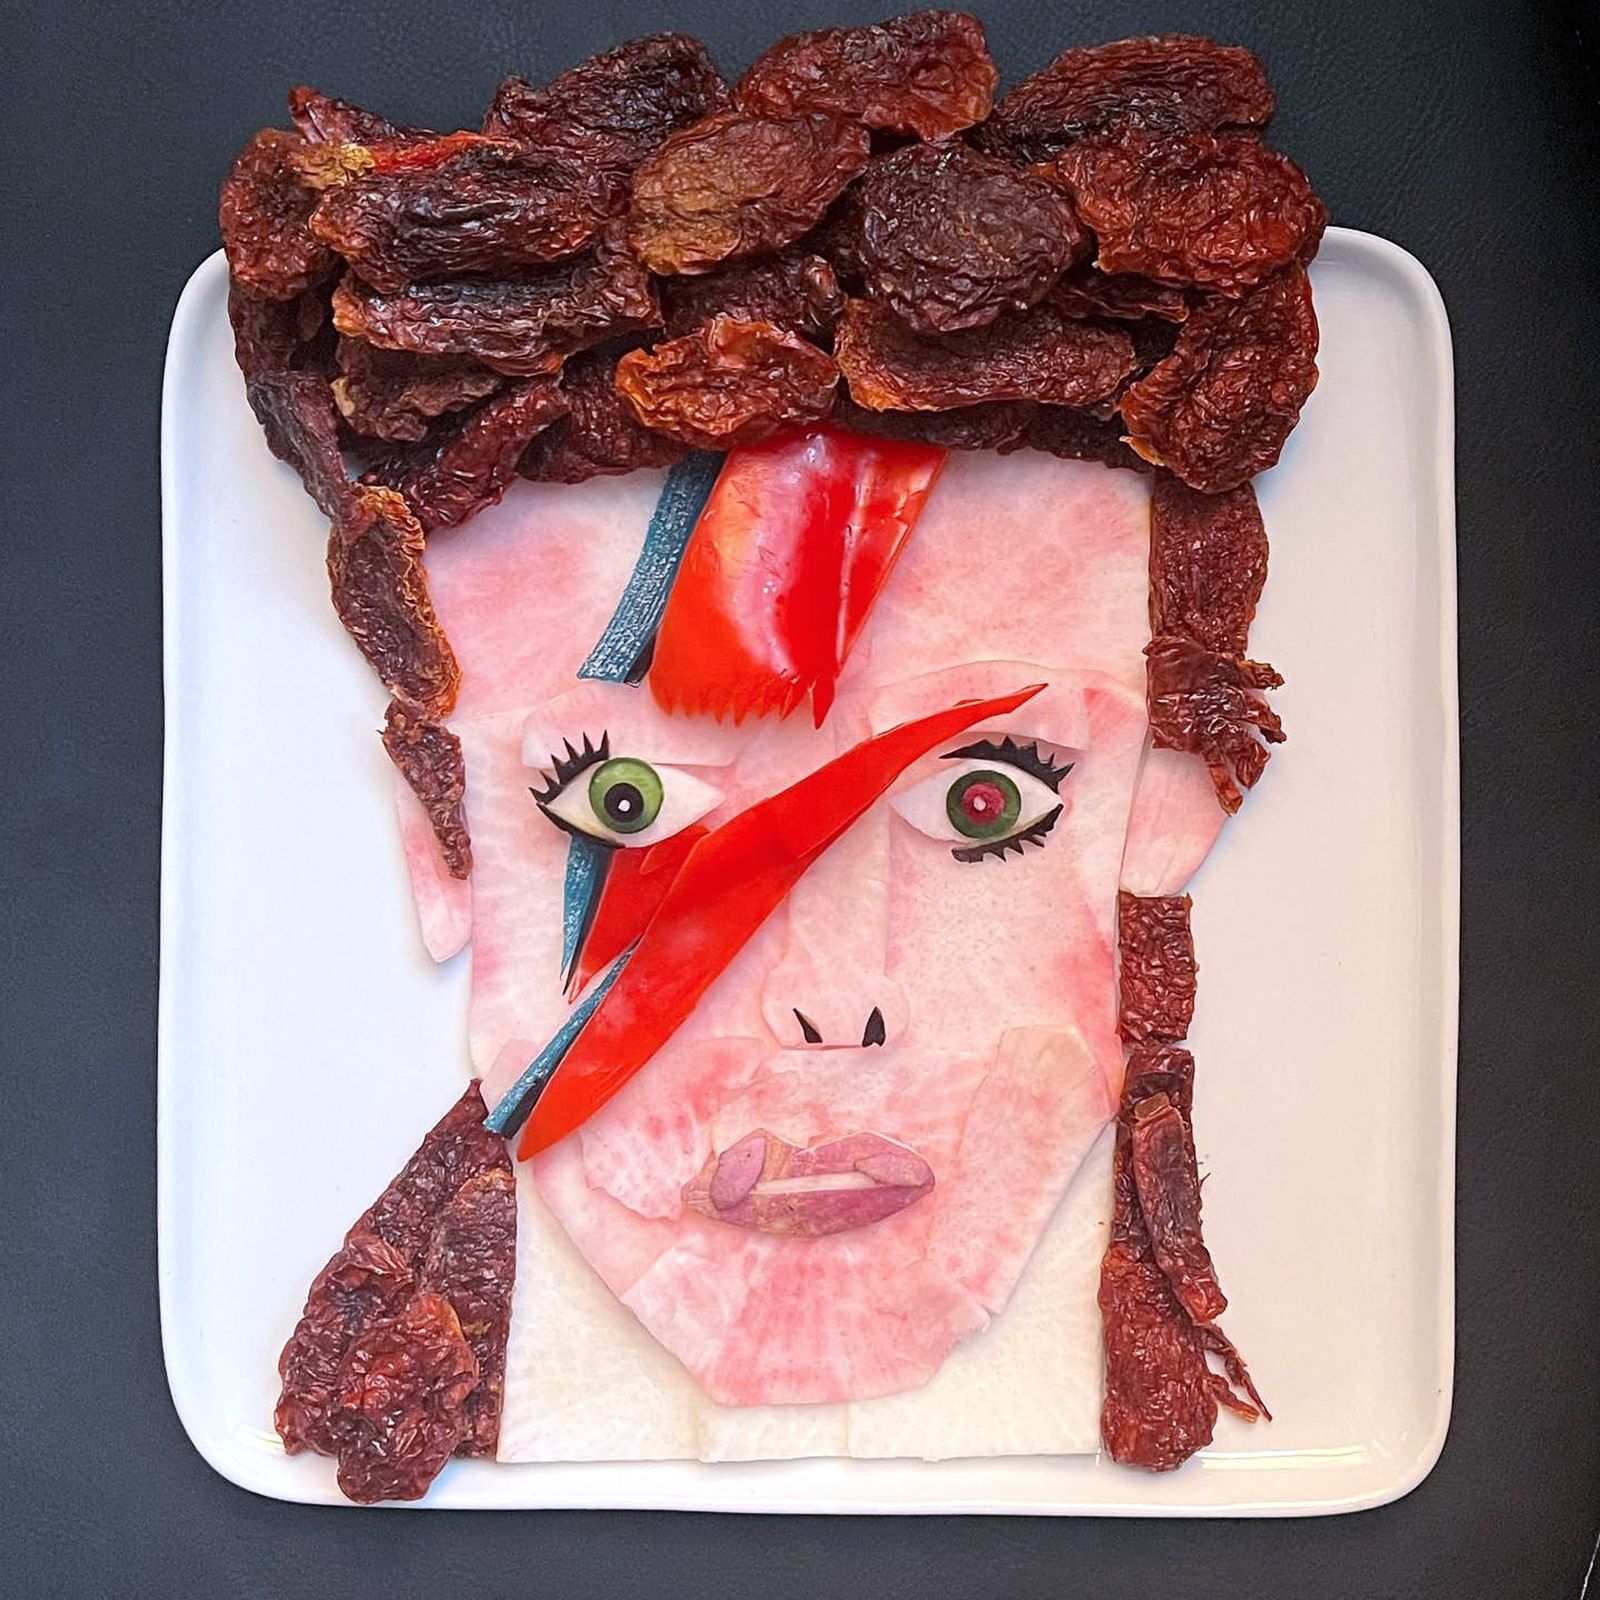 Портрет Дэвида Боуи в образе Зигги Стардаста, созданный кулинарным художником Харли Лэнгбергом